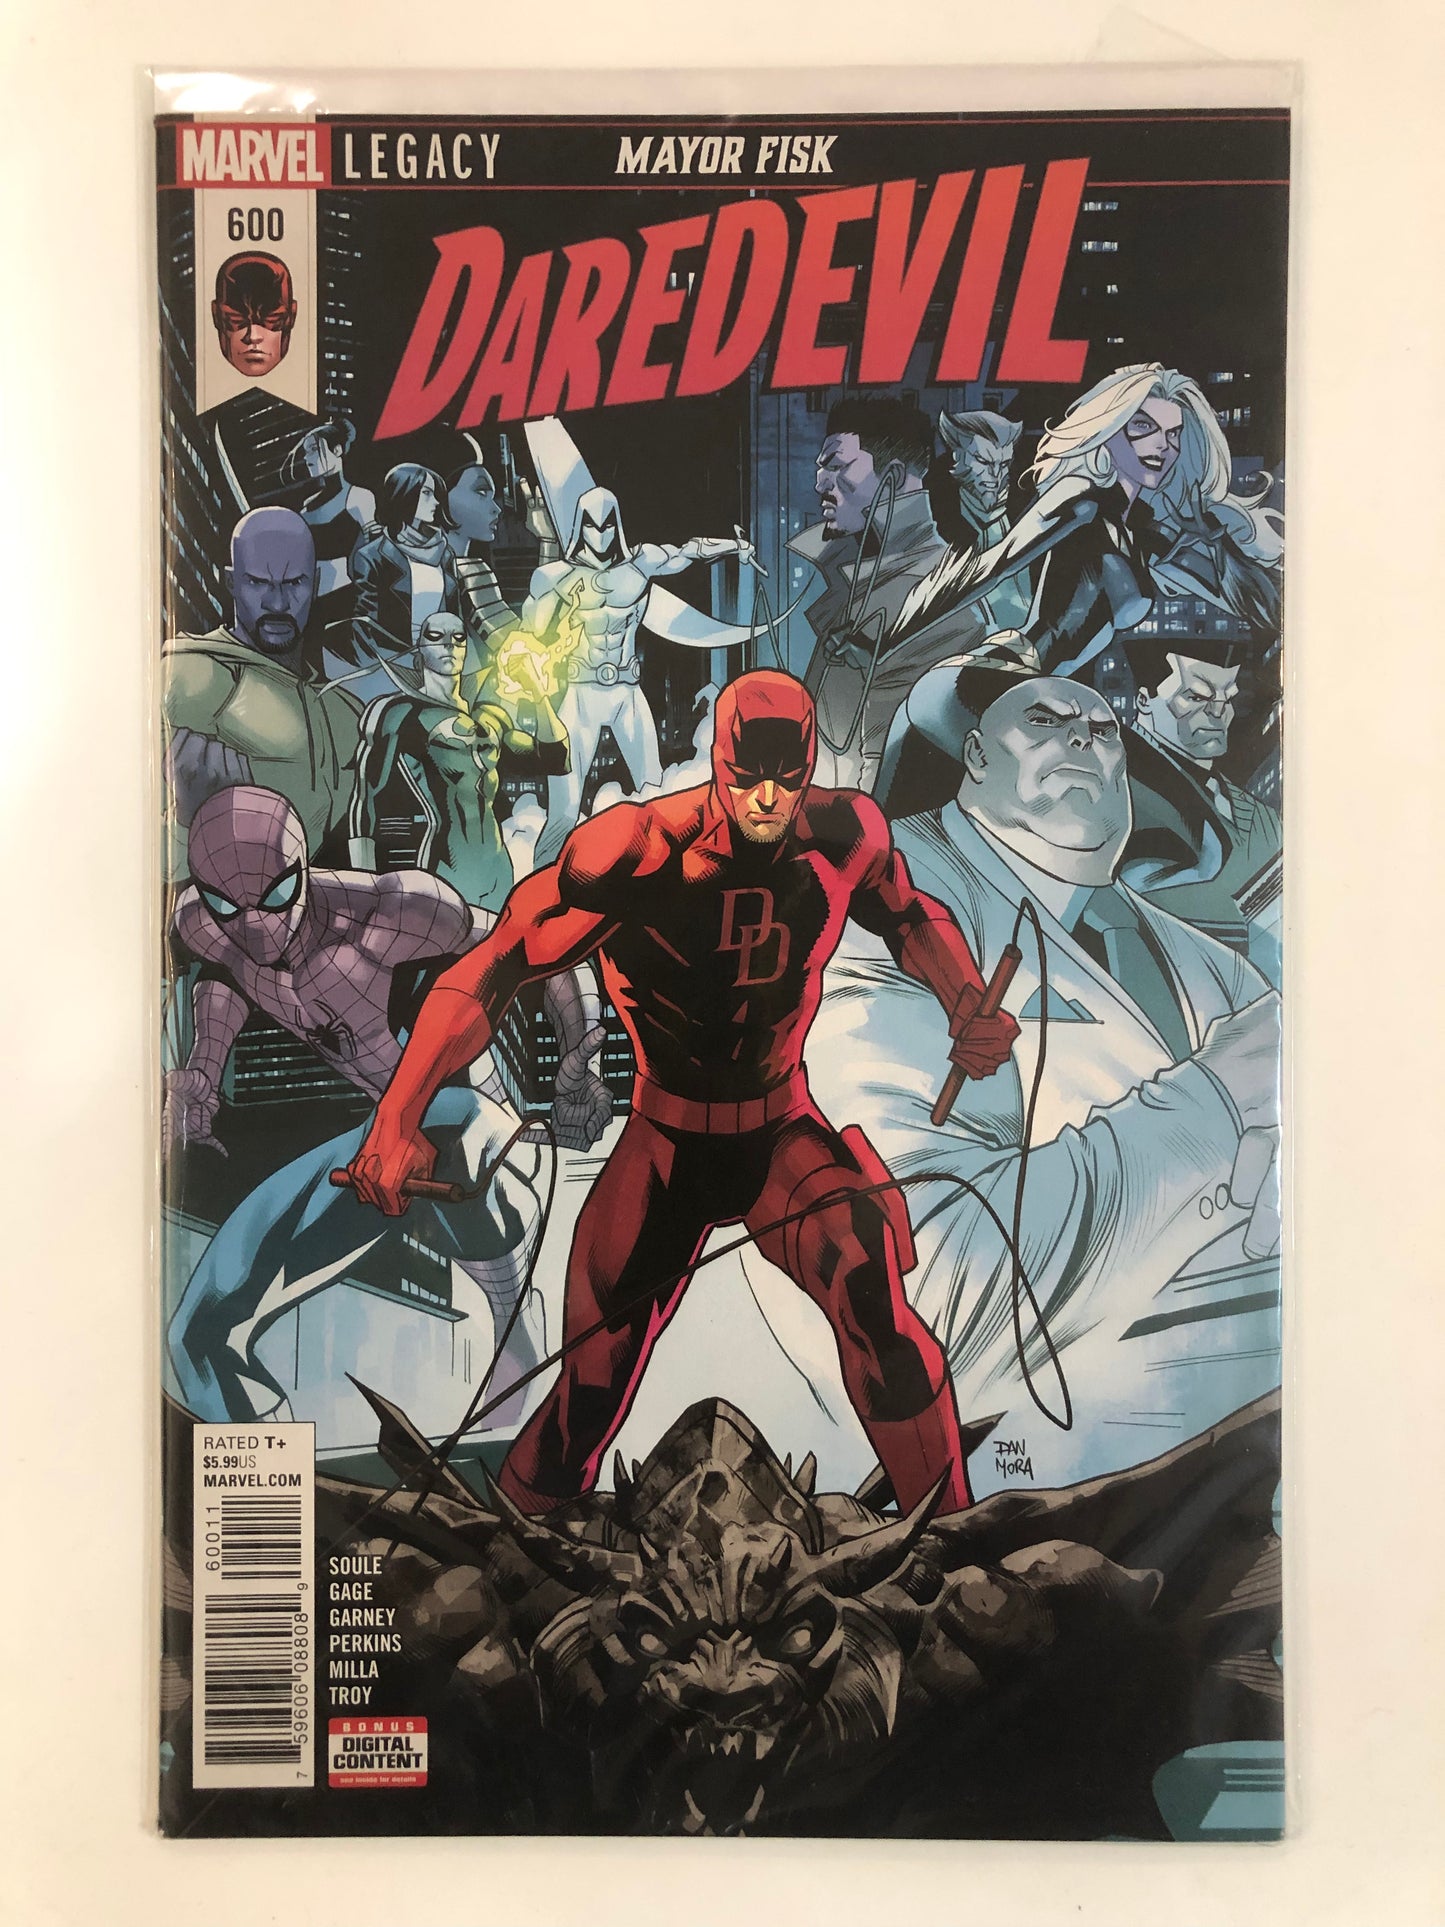 Daredevil #600